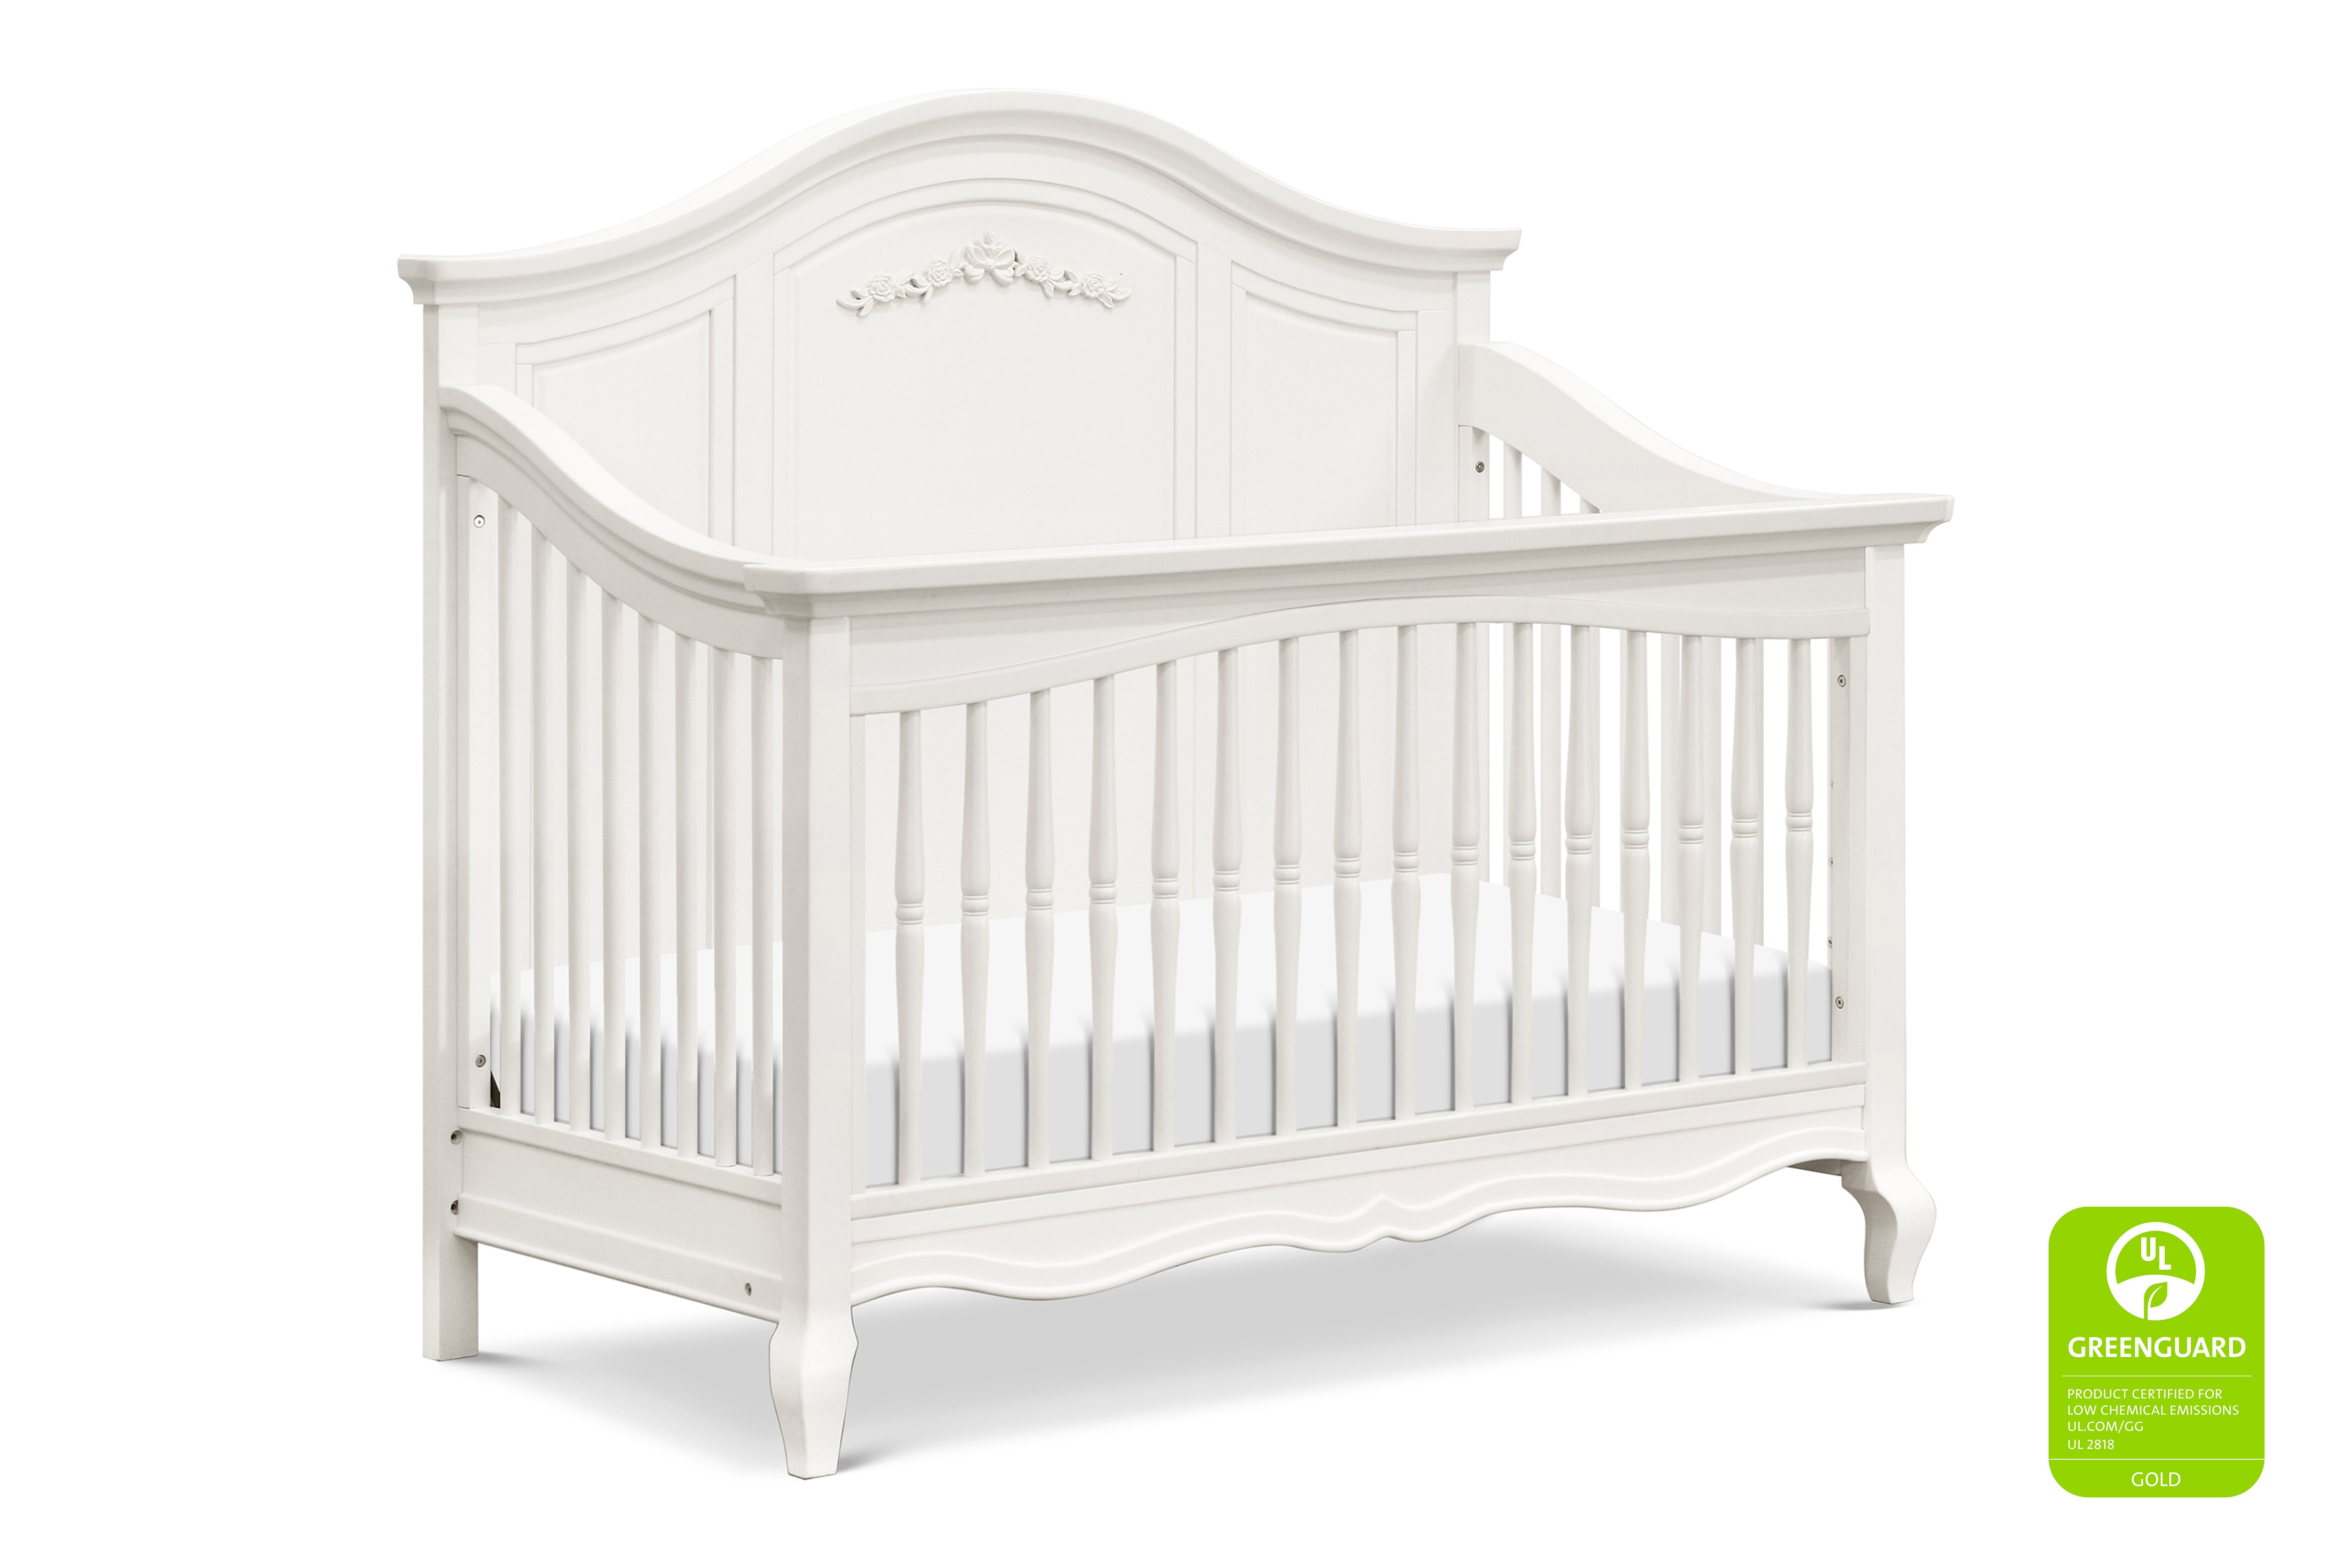 Mirabelle crib in warm white